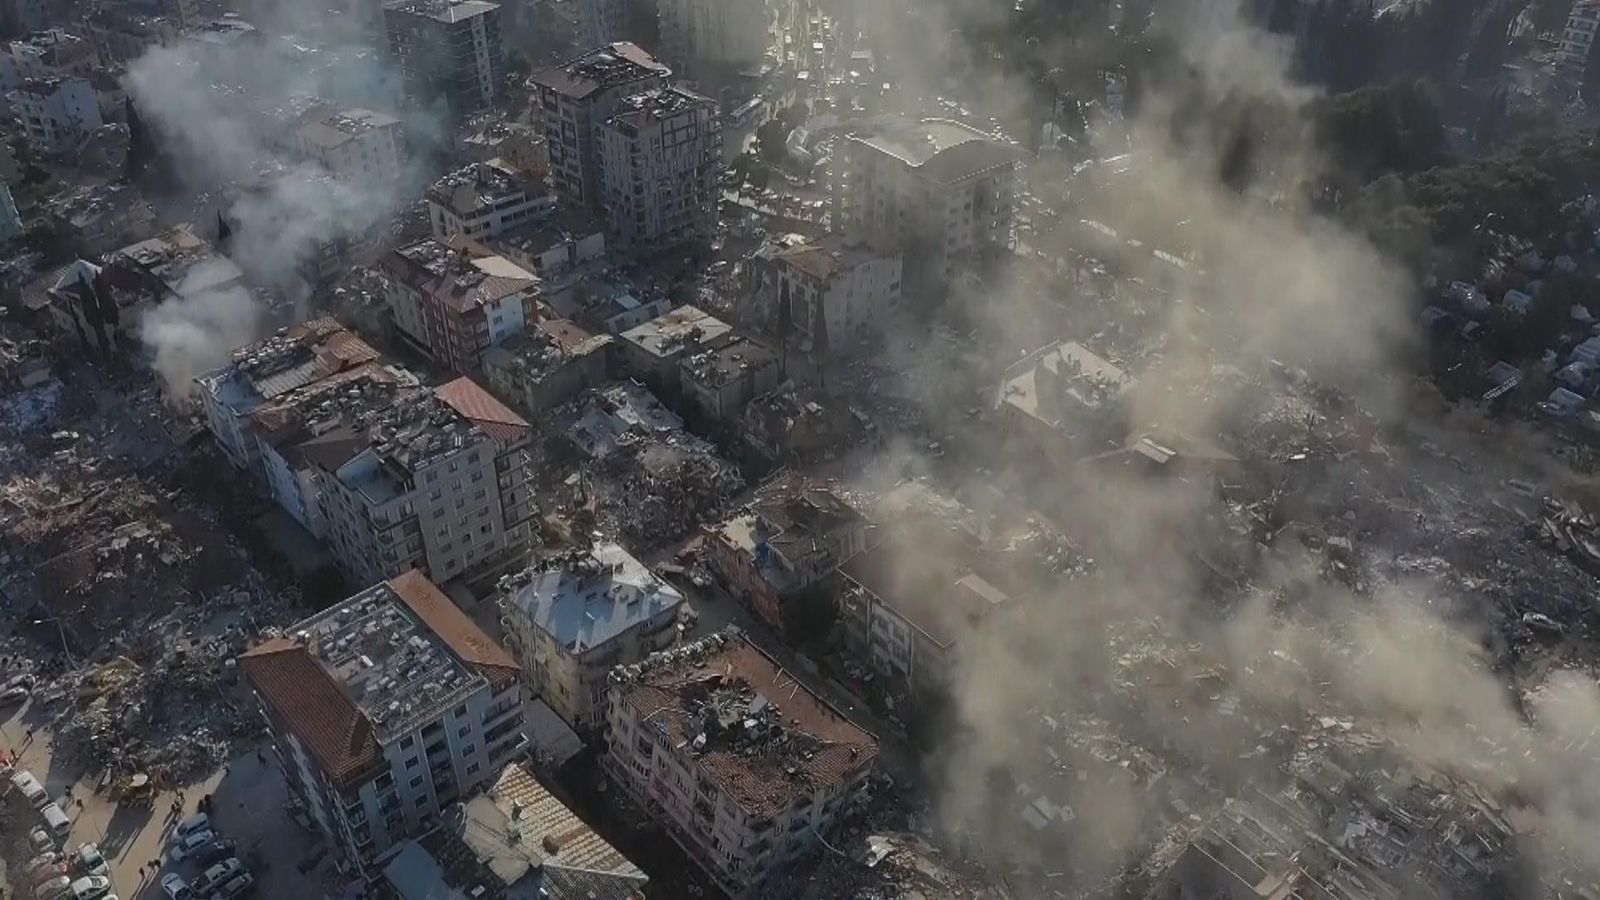 TurkeySyria earthquake Aerial footage shows devastation in Turkish